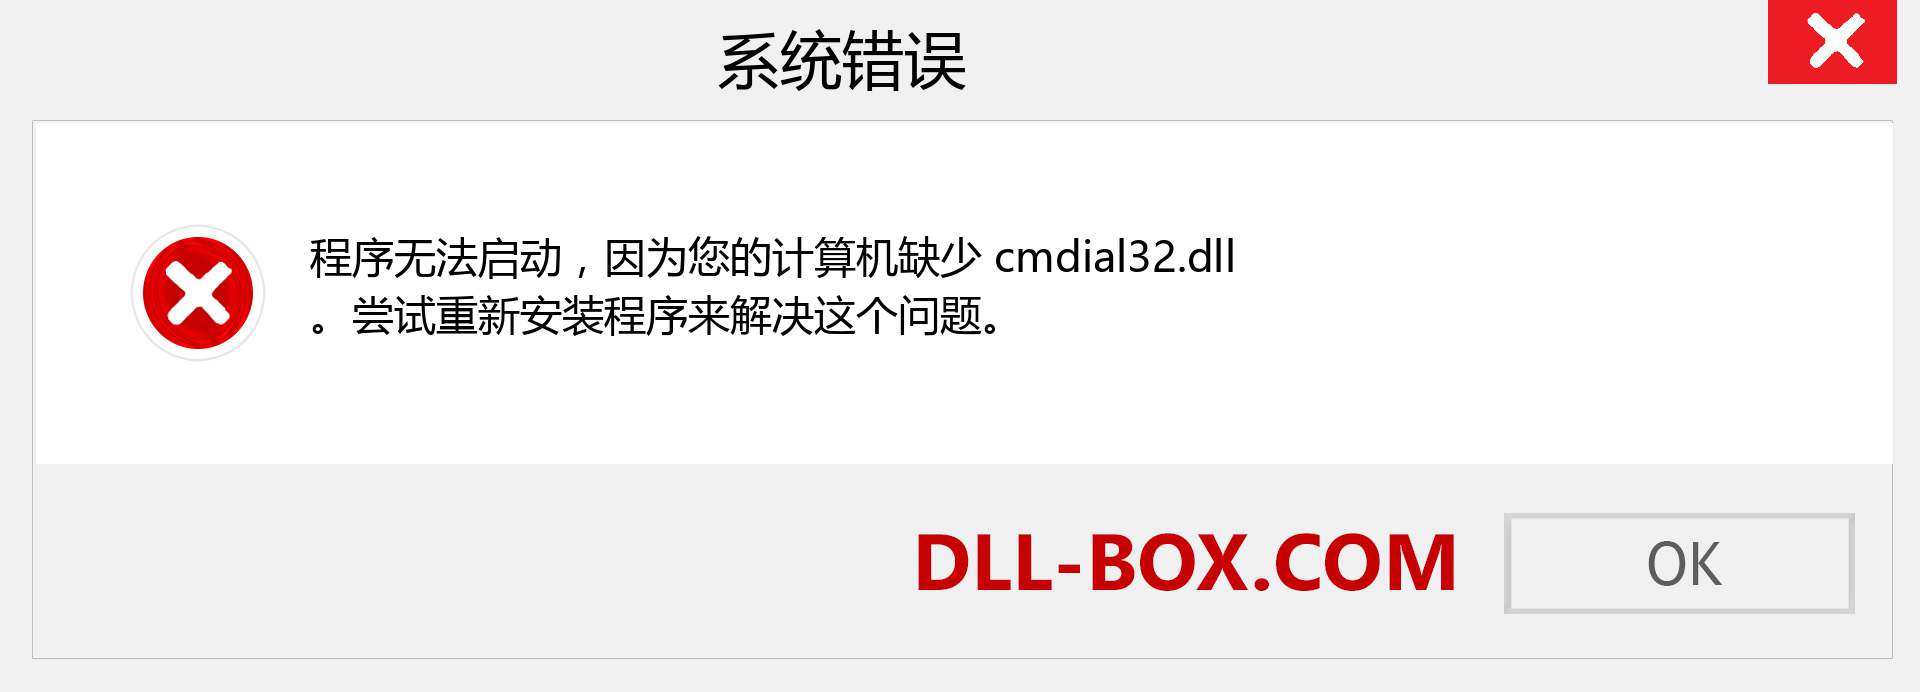 cmdial32.dll 文件丢失？。 适用于 Windows 7、8、10 的下载 - 修复 Windows、照片、图像上的 cmdial32 dll 丢失错误